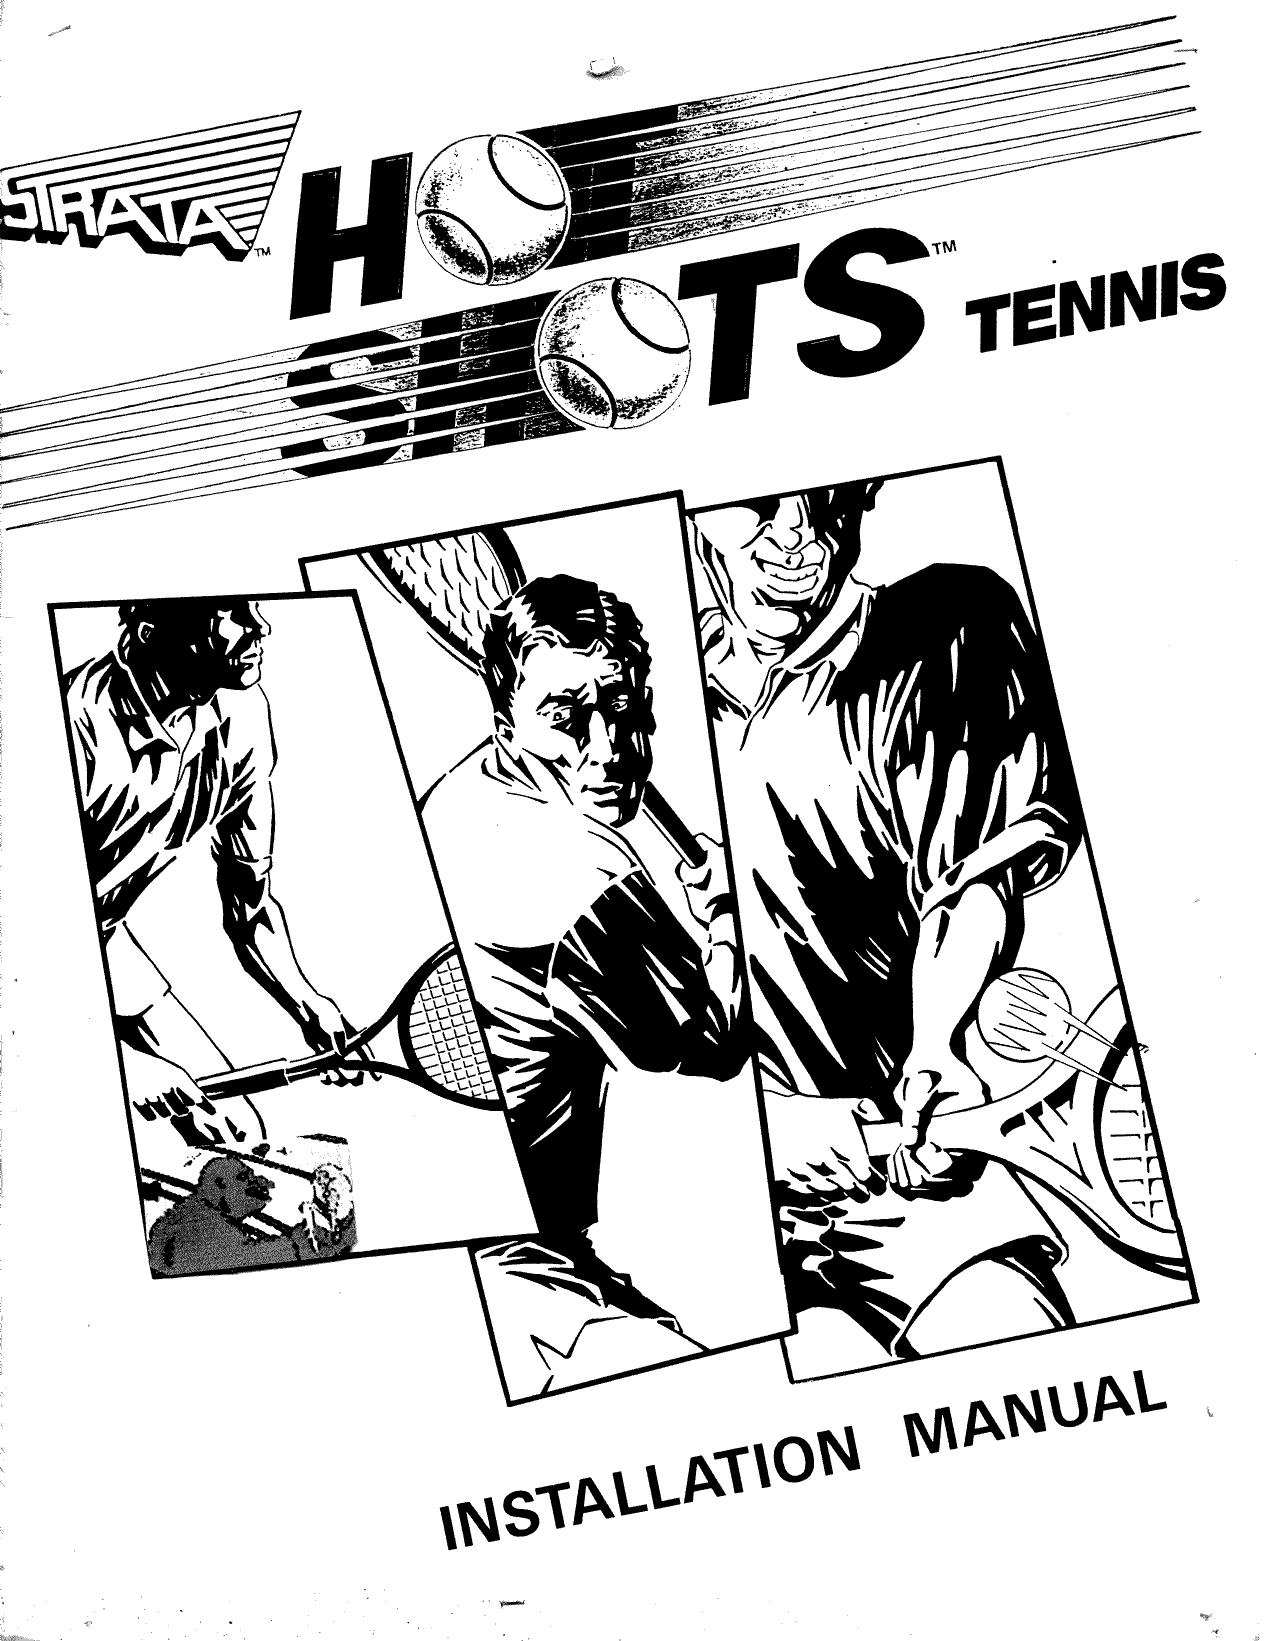 Hot Shots Tennis.man